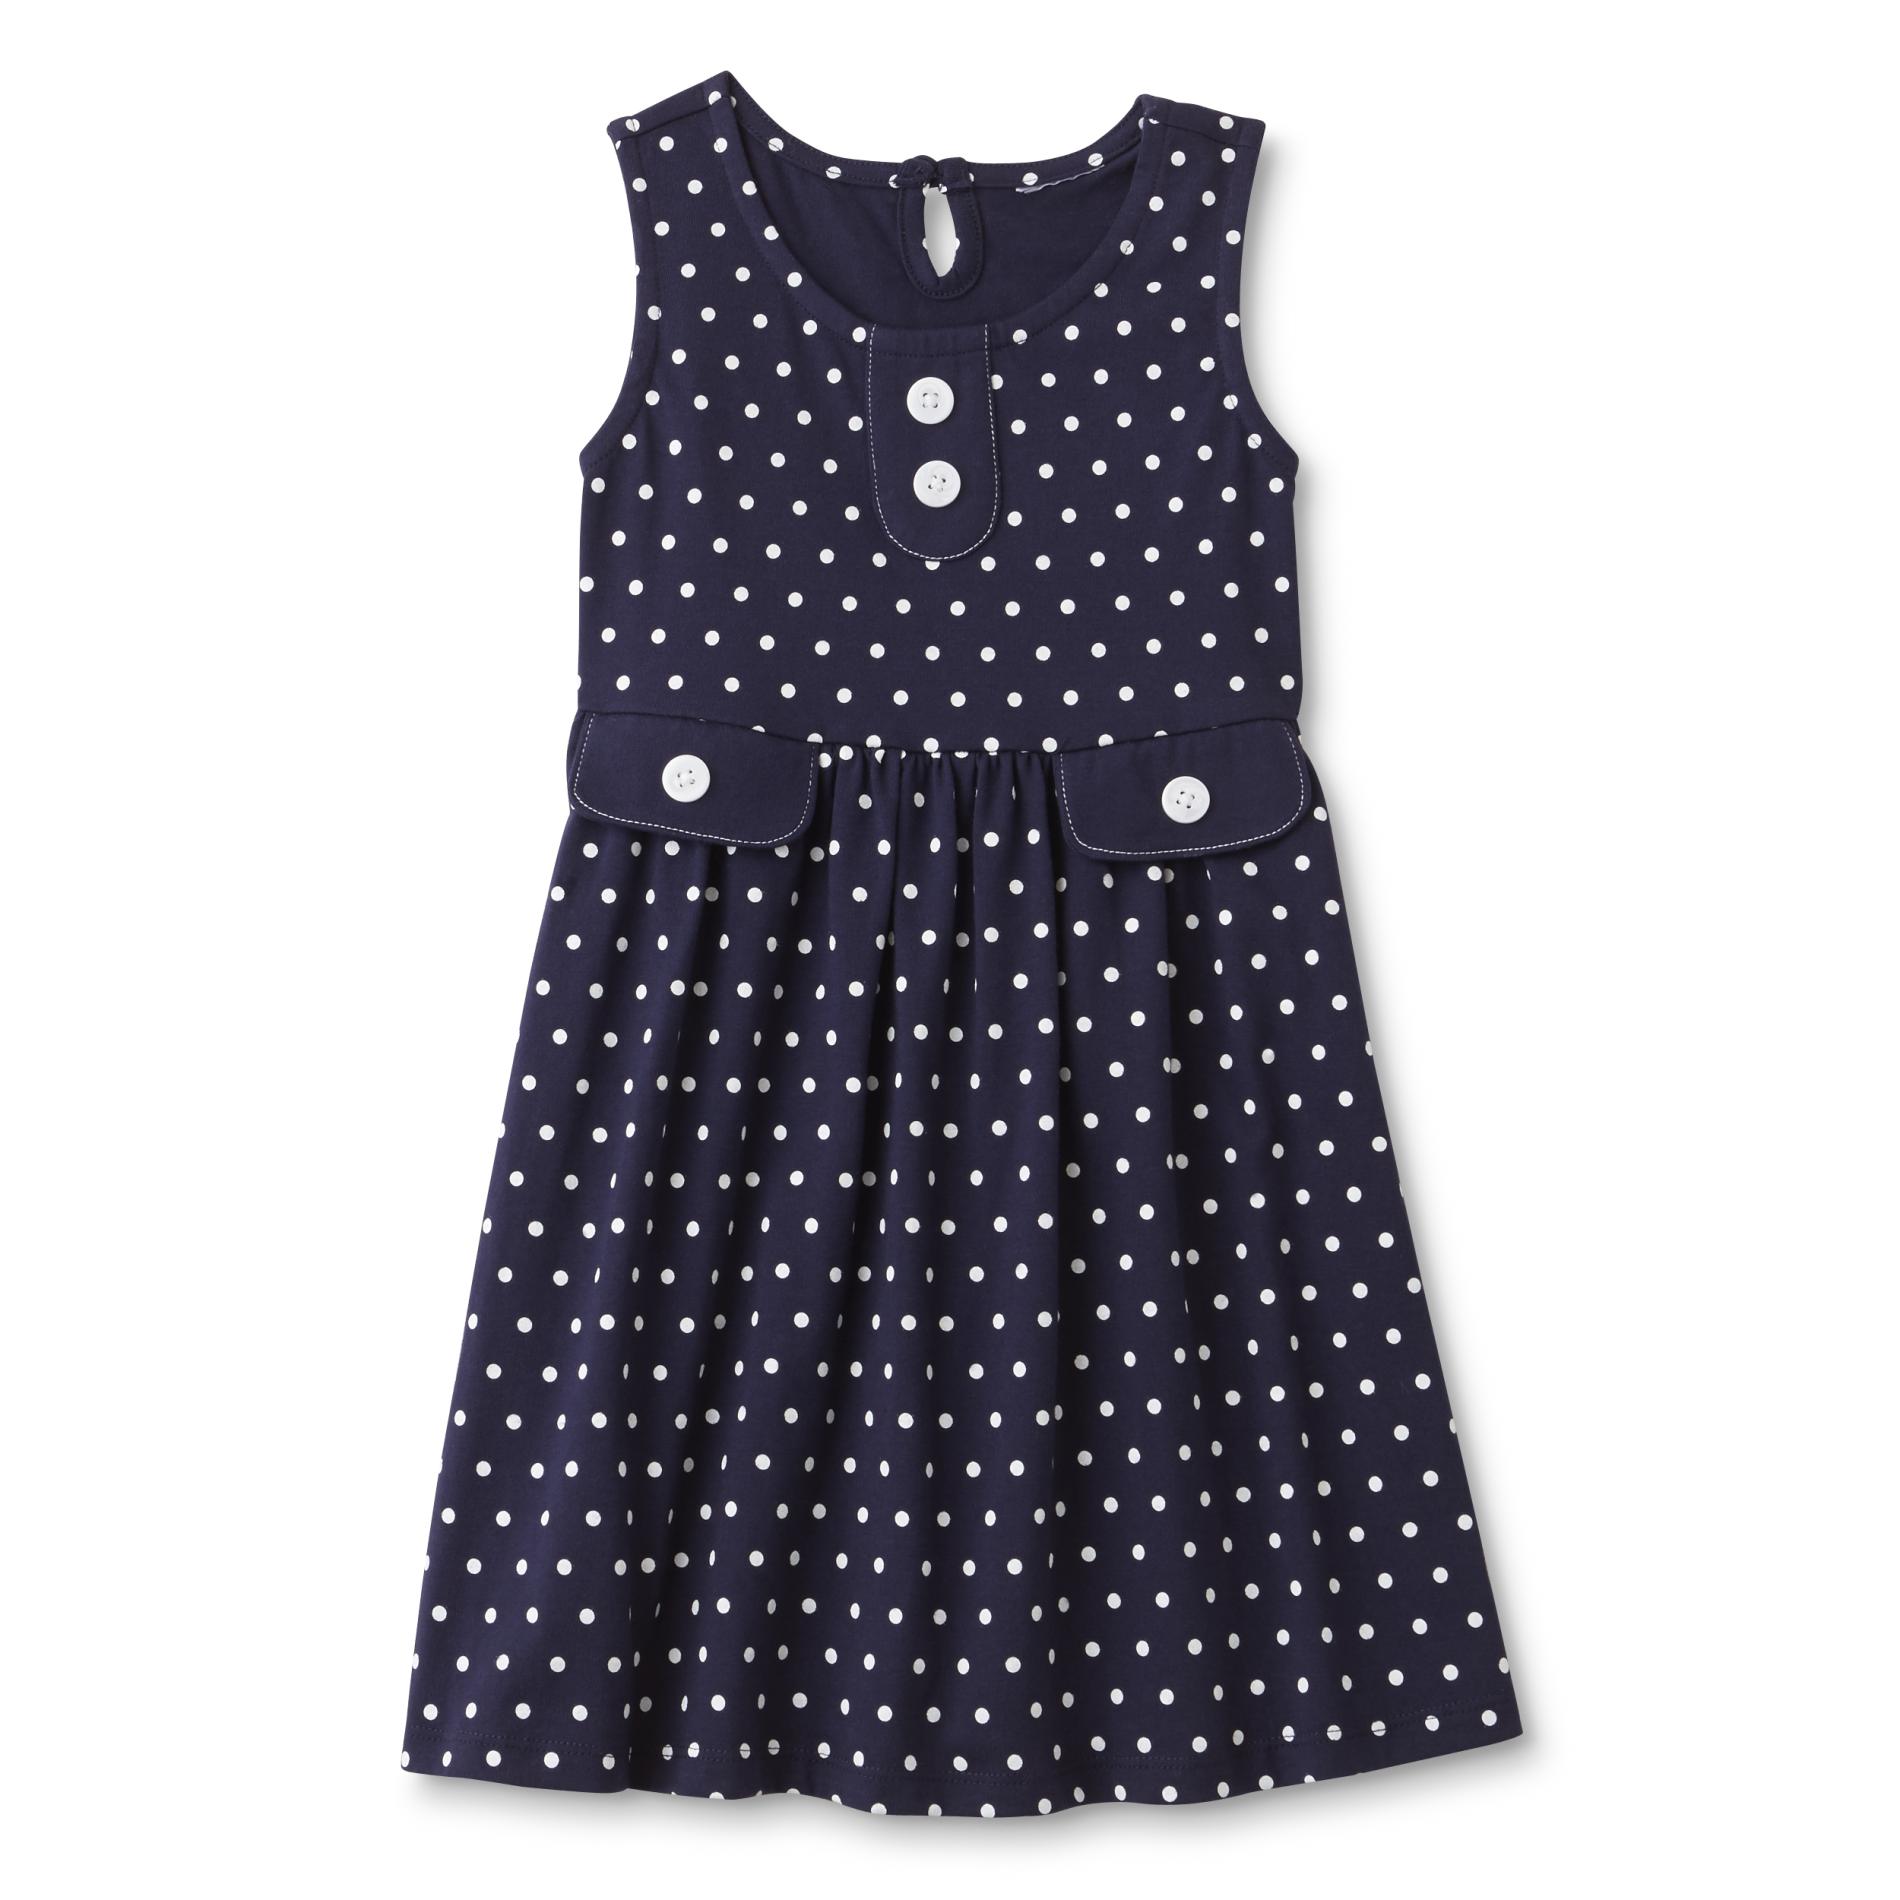 Toughskins Girls' Sleeveless Dress - Dots